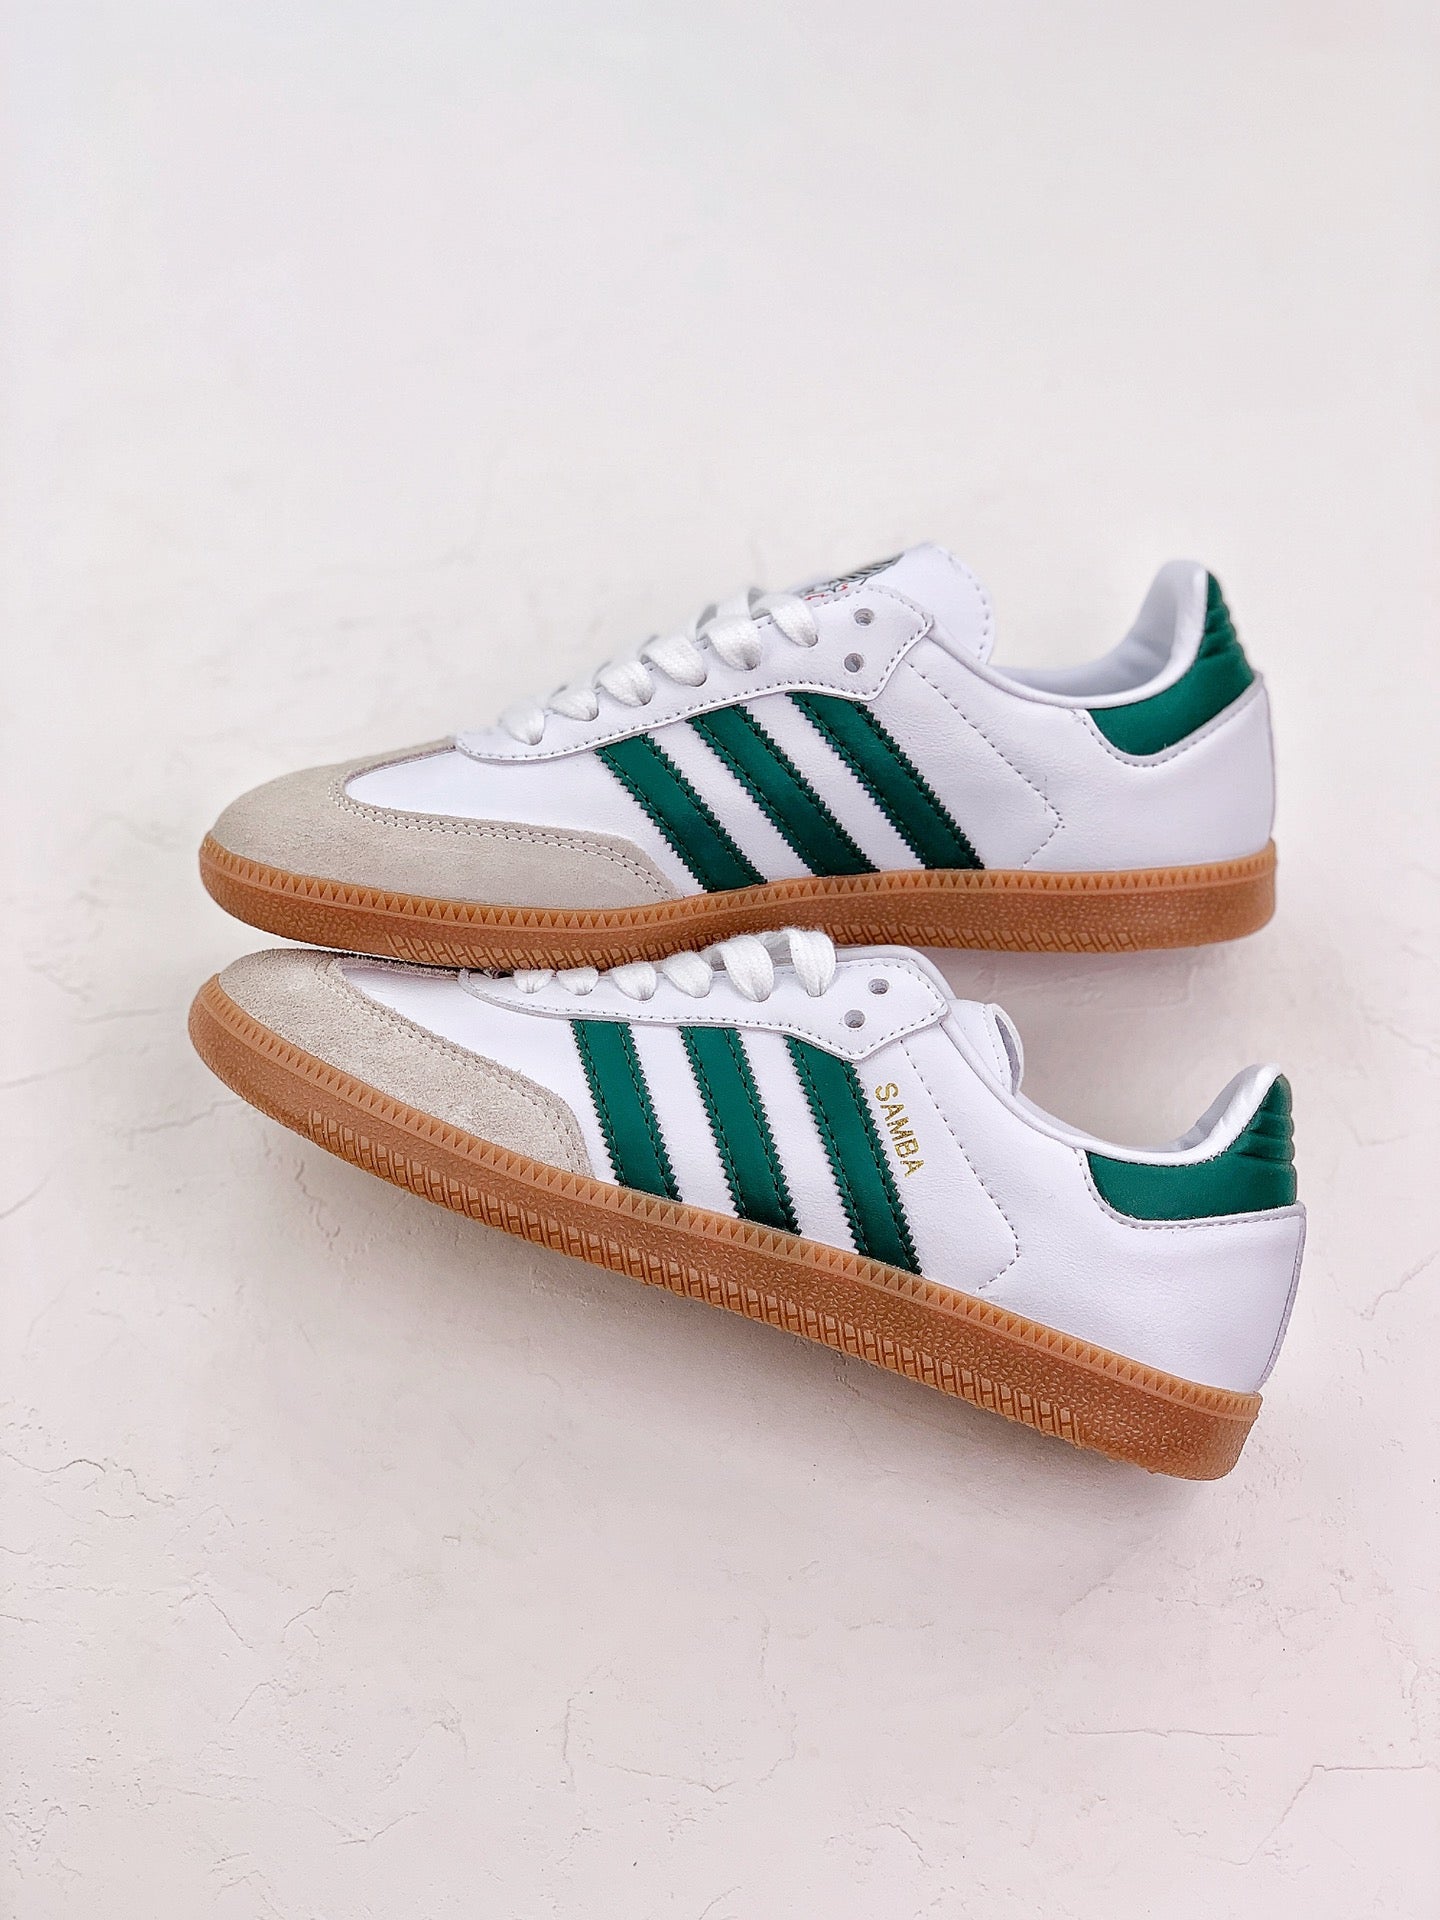 Adidas samba shiny green shoes